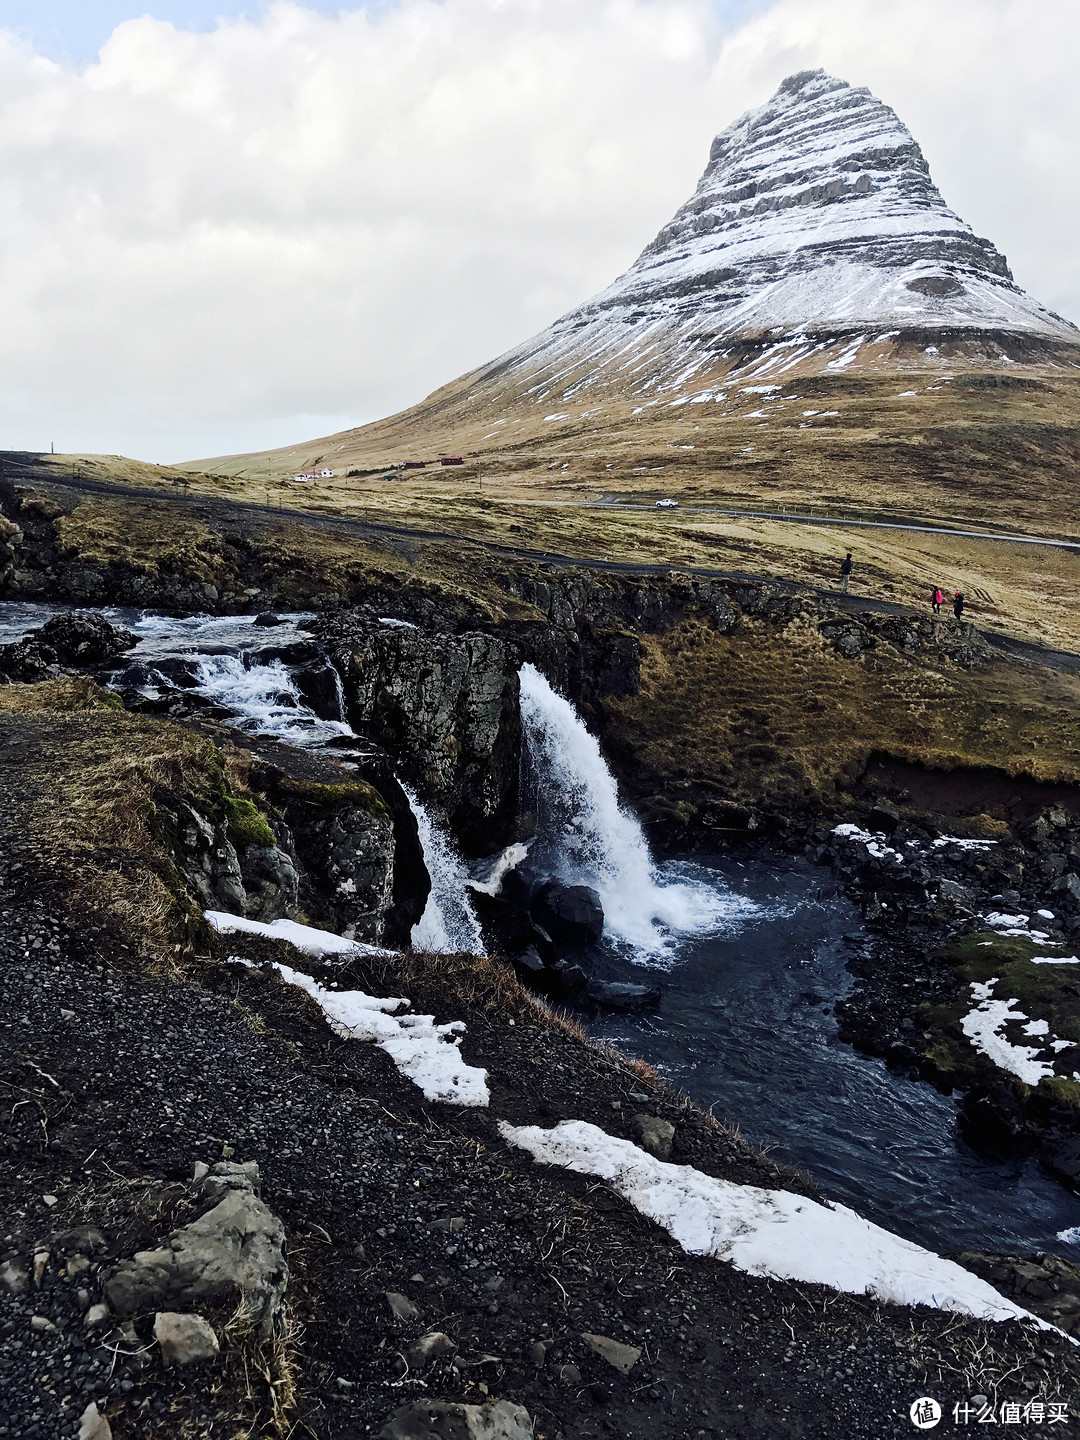 山对面就有个观景地，旁边还有一些小瀑布。不同角度可以拍出不同的大片，摄影师们最爱的地方之一。